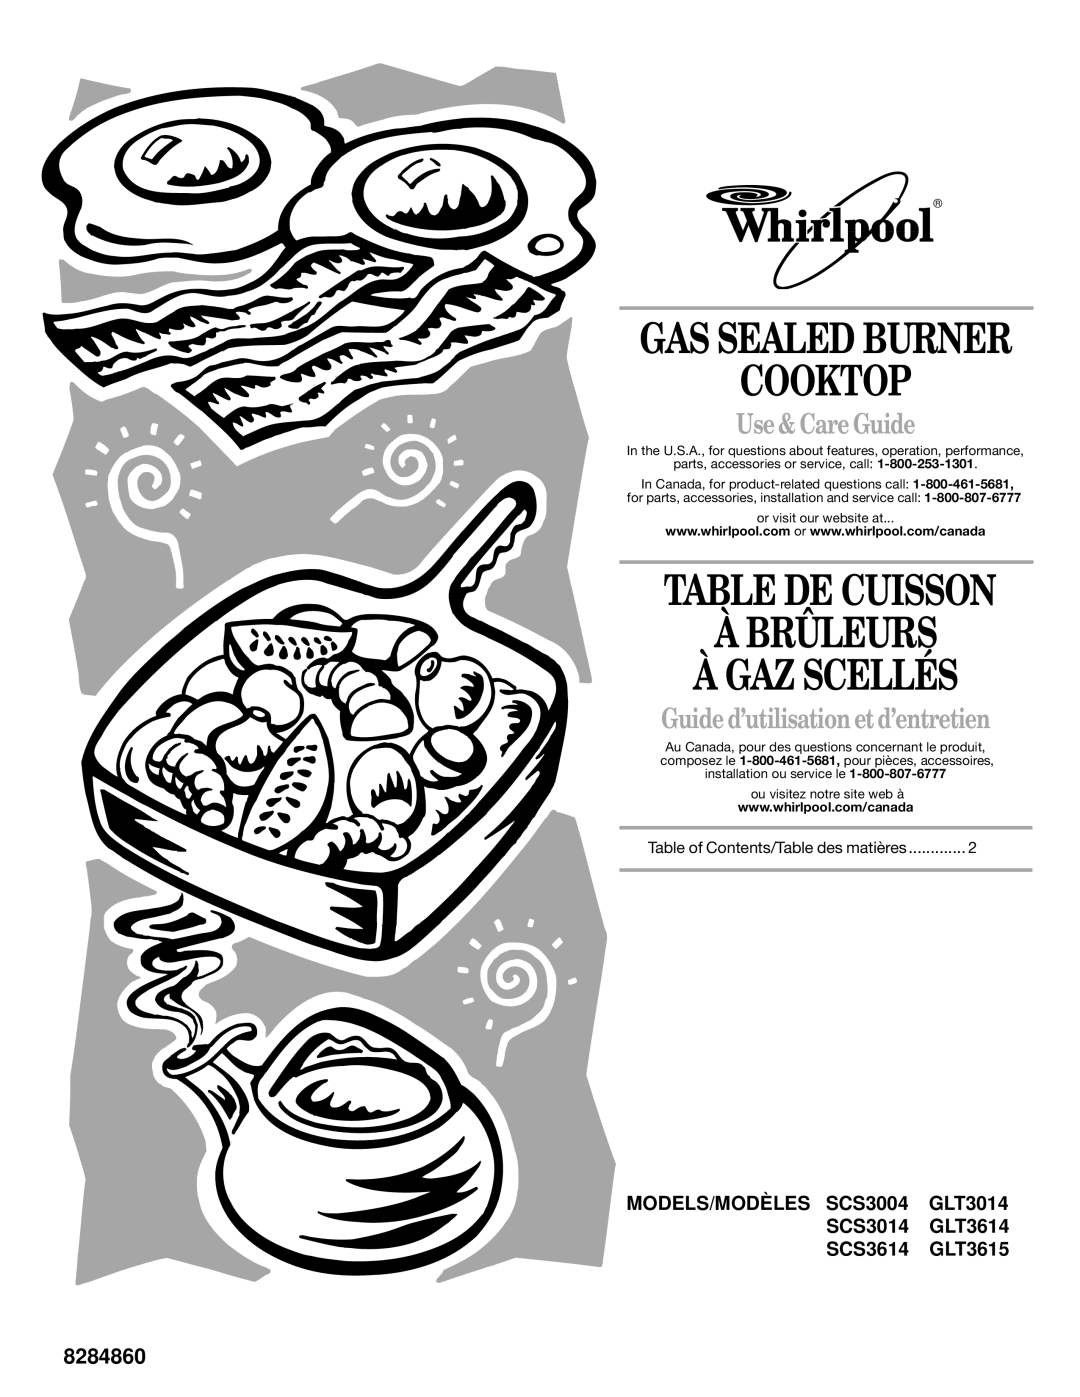 Whirlpool SCS3014, SCS3614 manual Cooktop, Table De Cuisson À Brûleurs À Gaz Scellés, Use & Care Guide, Gas Sealed Burner 